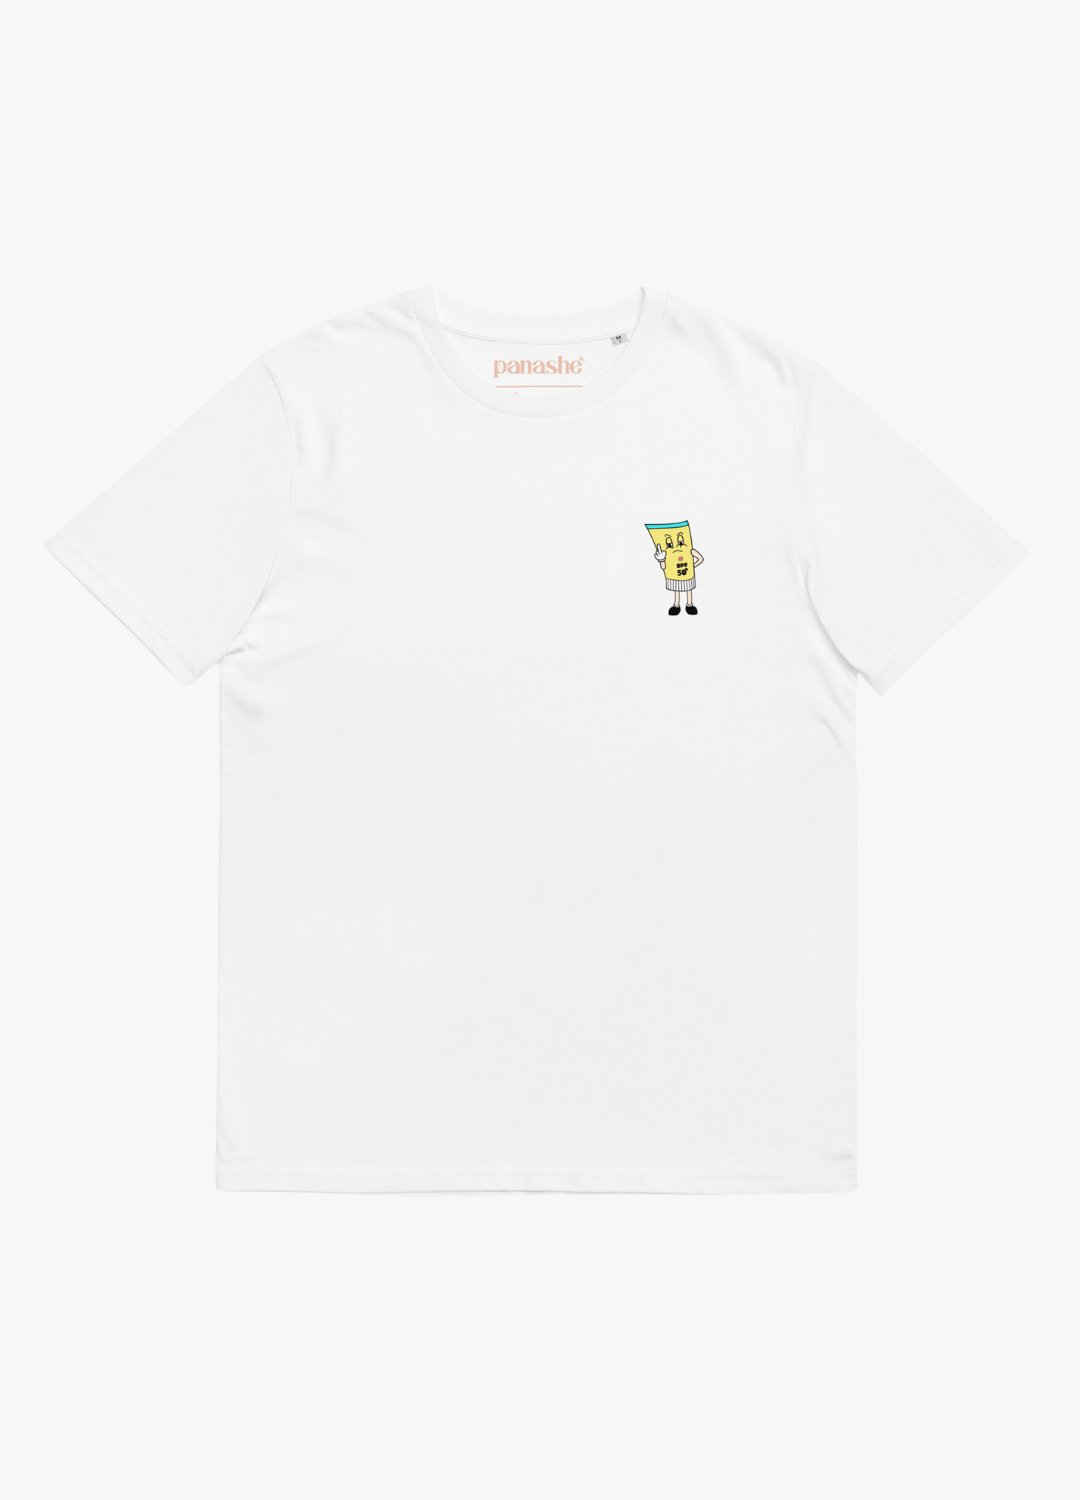 tshirt en coton blanc unisexe eco friendly slow fashion avec design de crème solaire qui fait un fuck style street style humoristique décalé